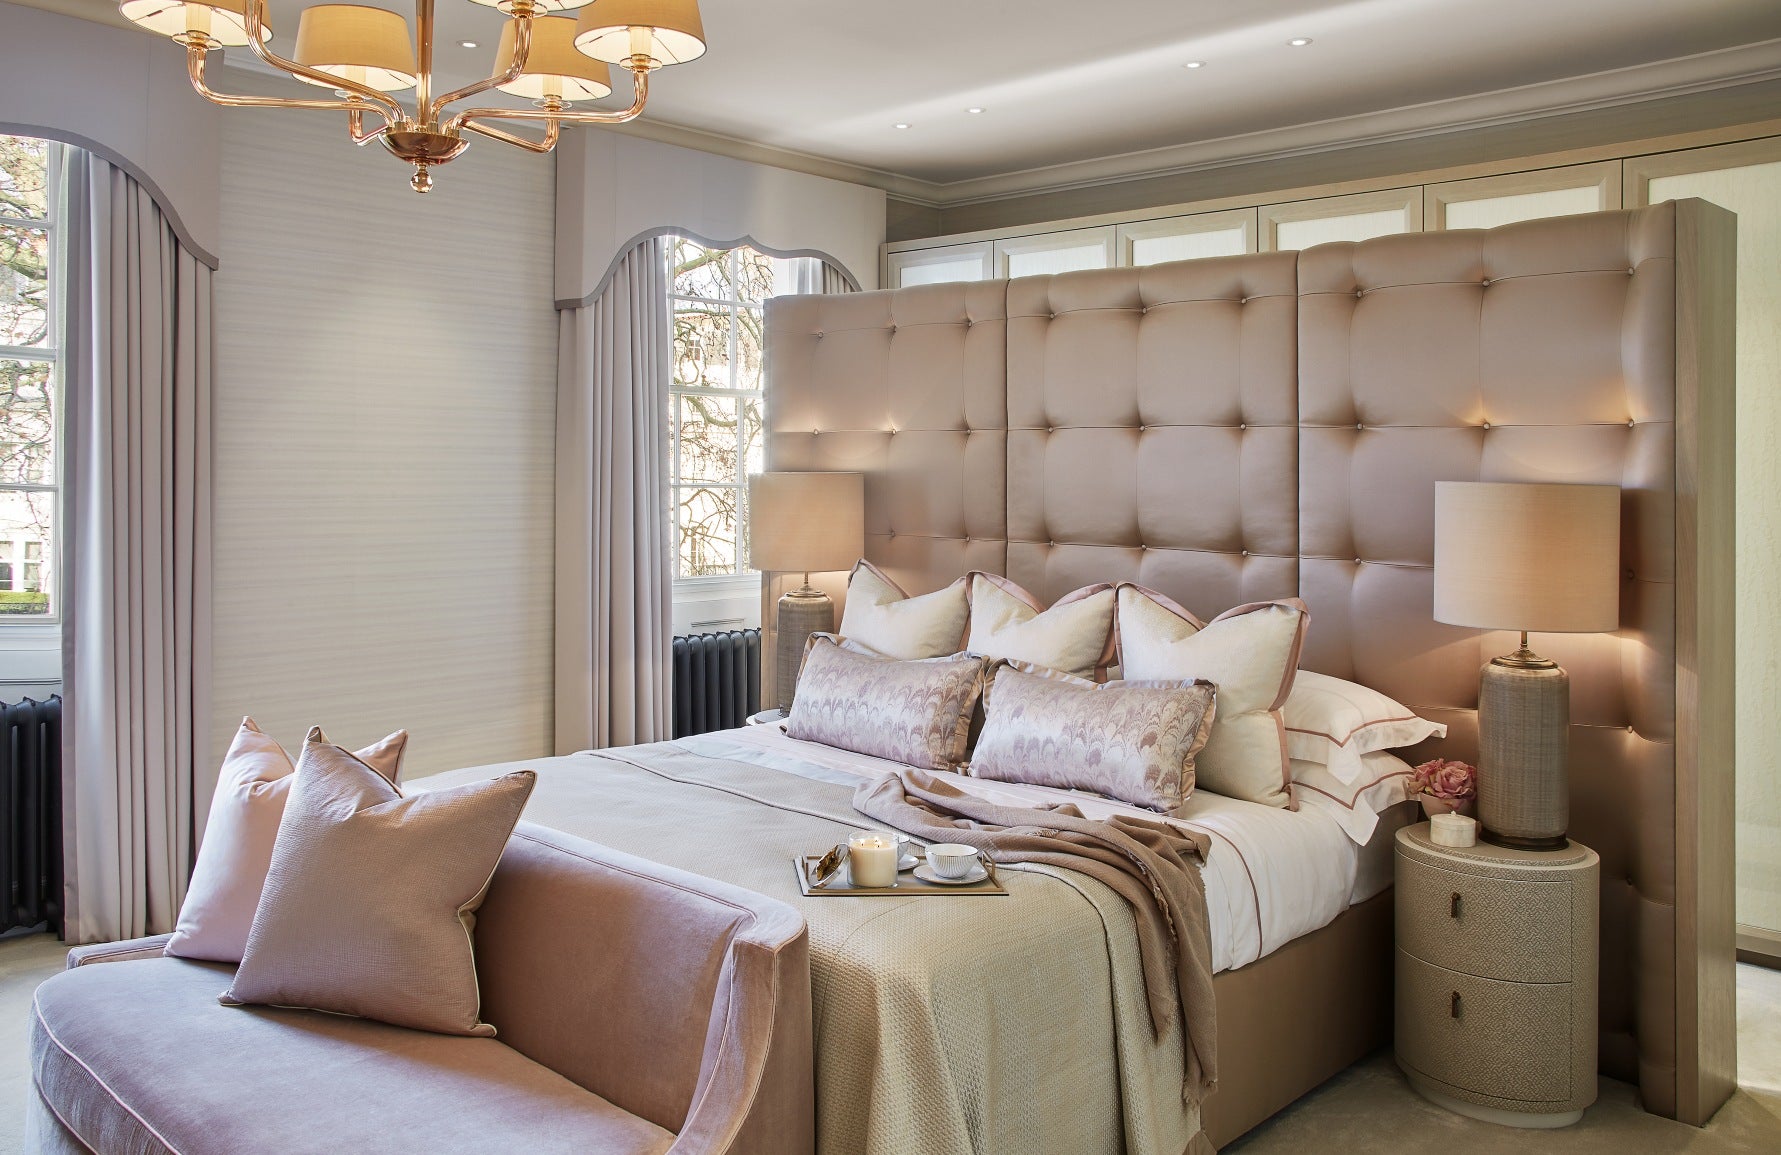 pink bedroom furniture for sale